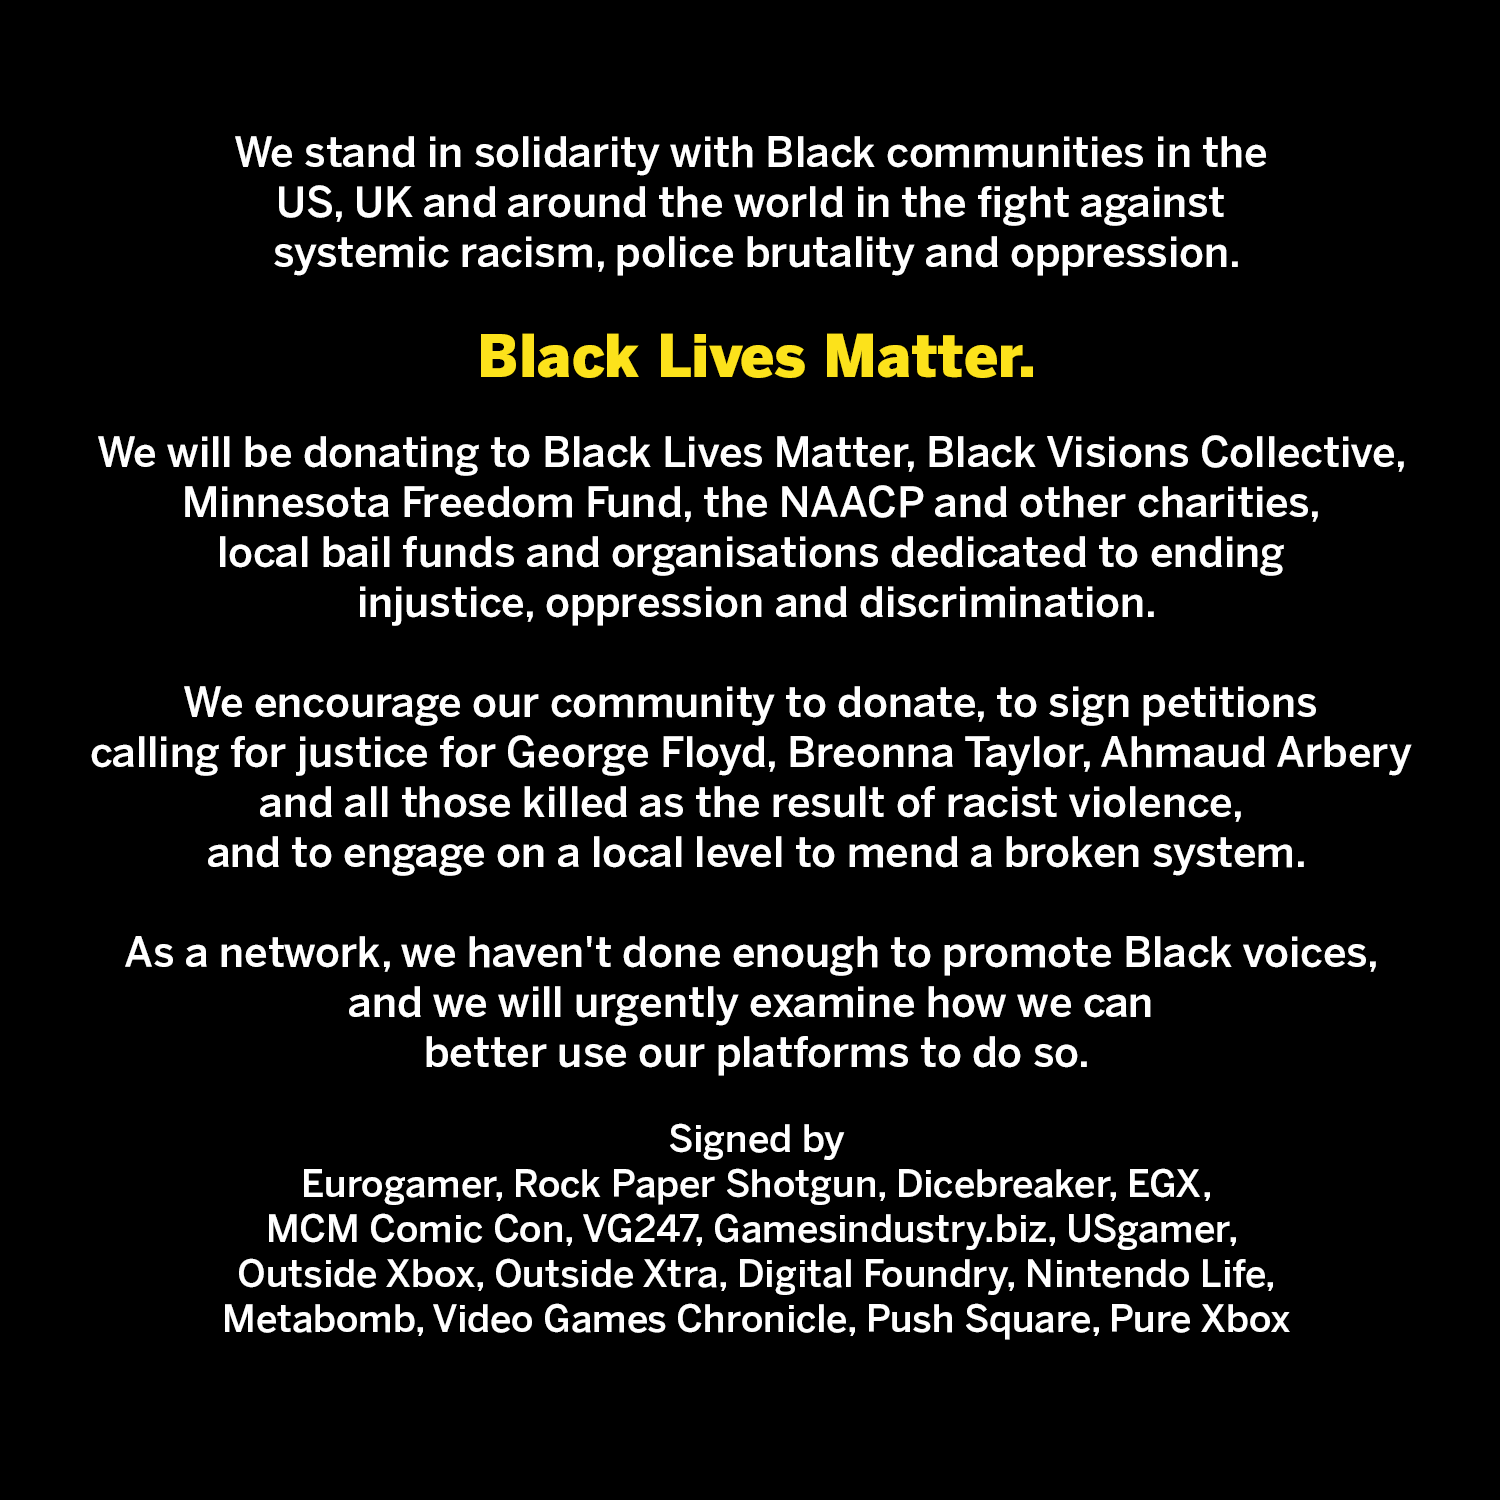 Image for #BlackLivesMatter